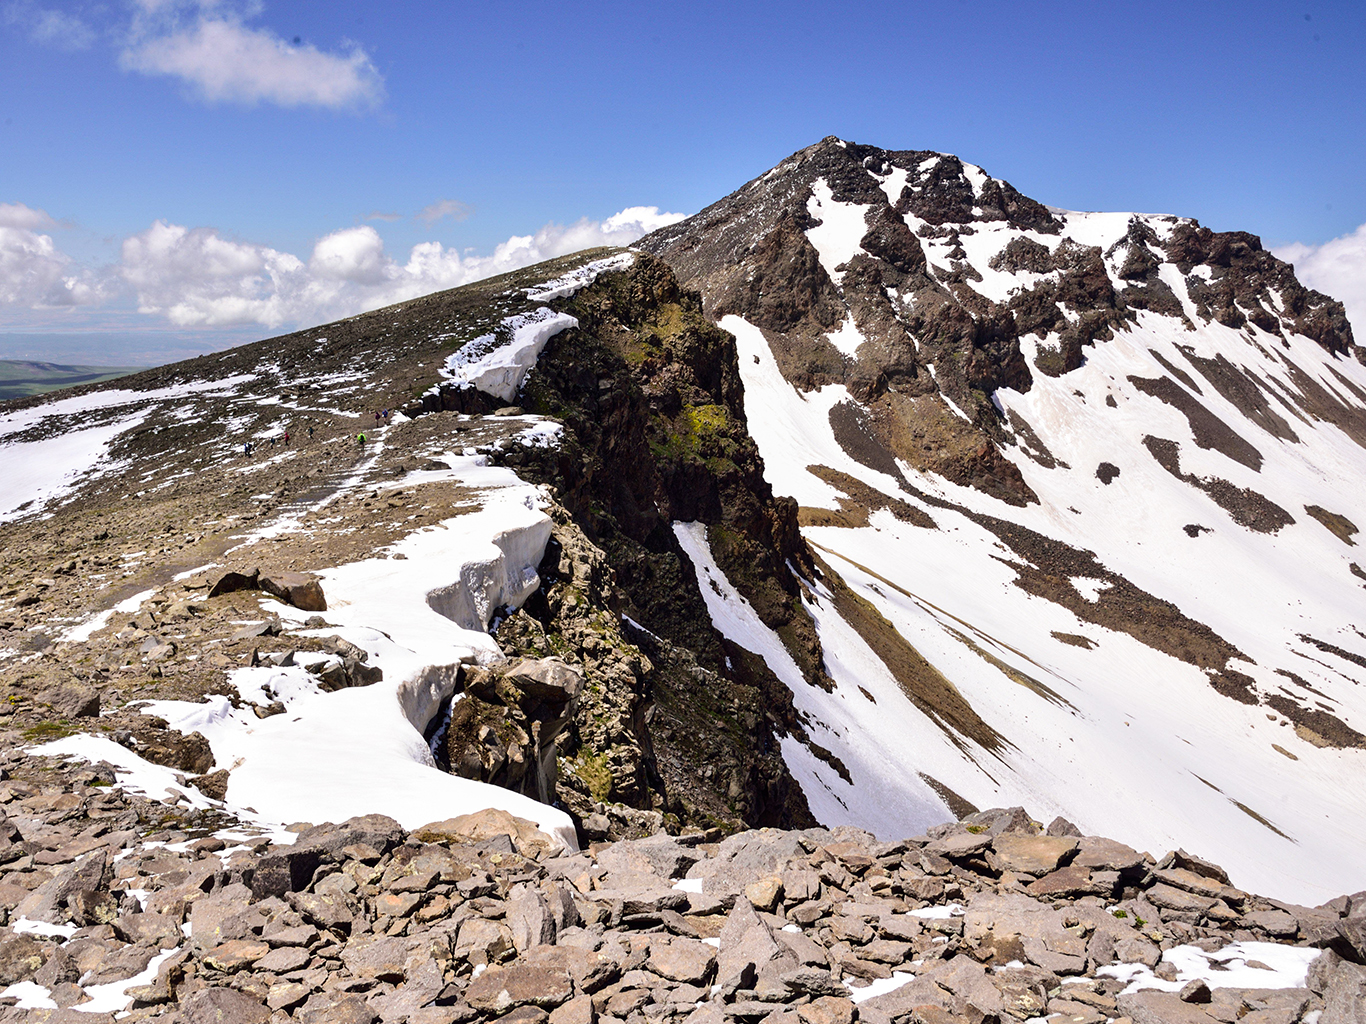 Zbytky sněhu na vrcholcích hory Aragac lze potkat i v létě